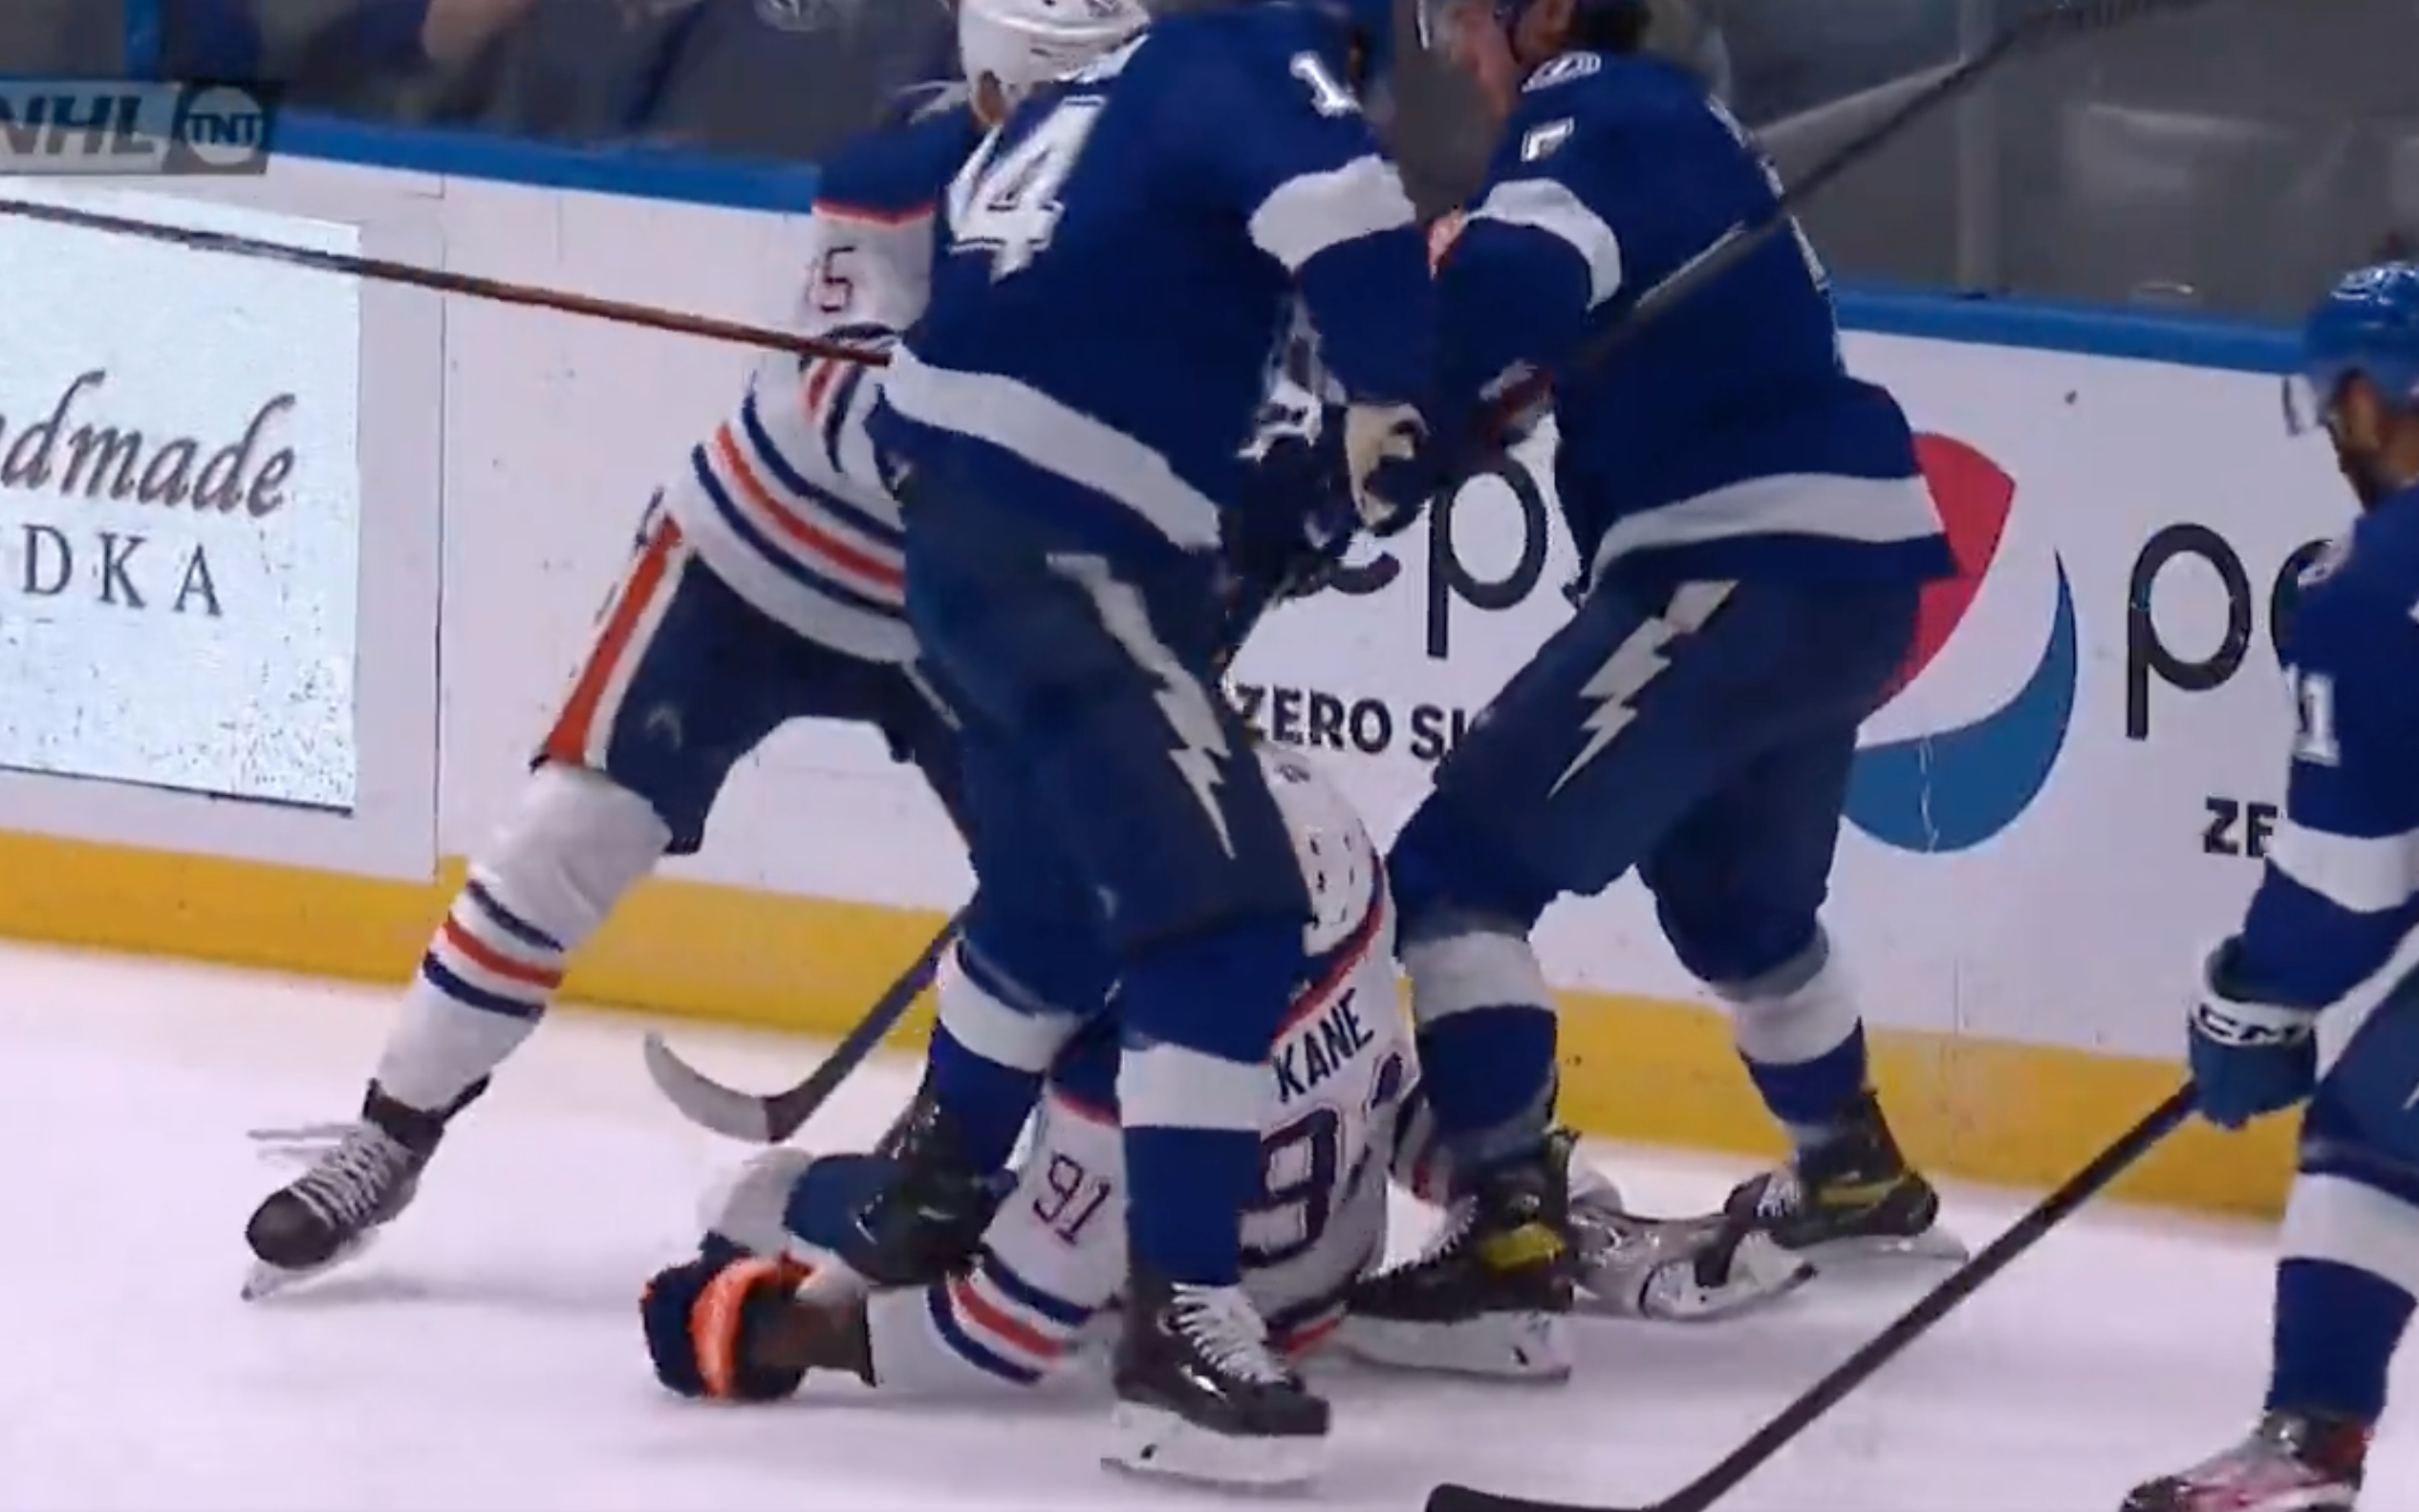 Oilers' Evander Kane has wrist sliced in bloody incident